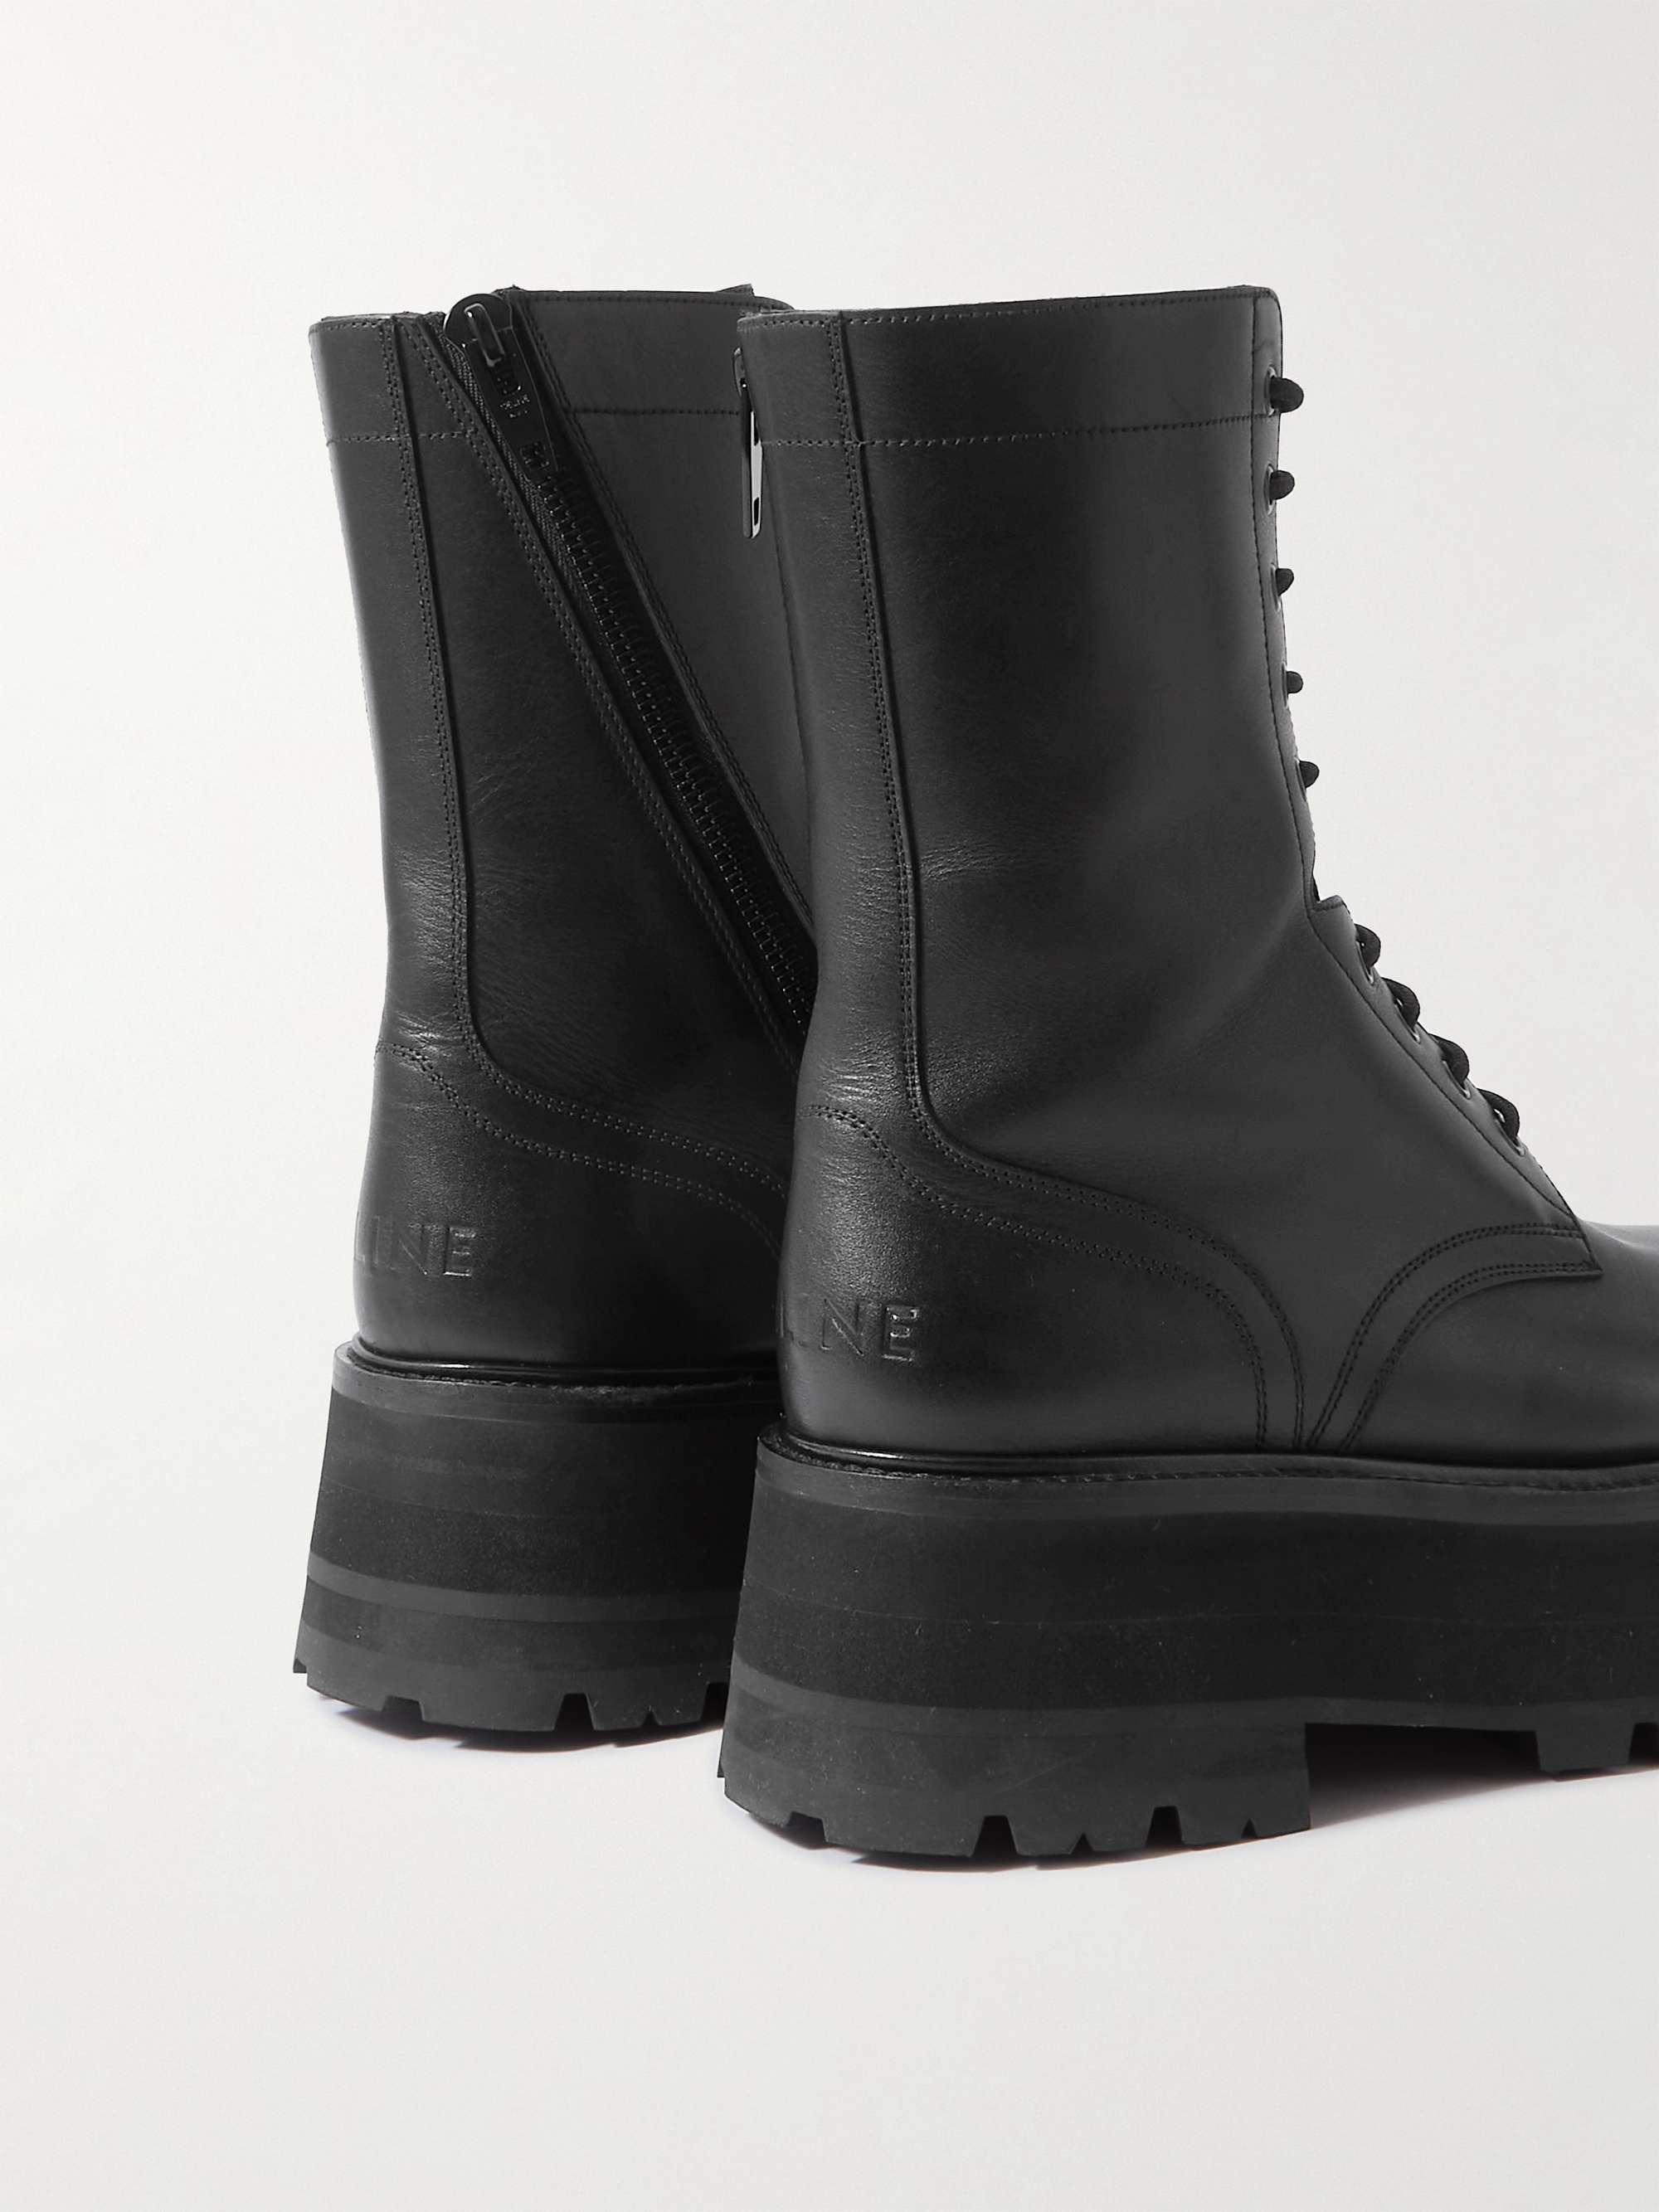 CELINE HOMME Leather Platform Boots